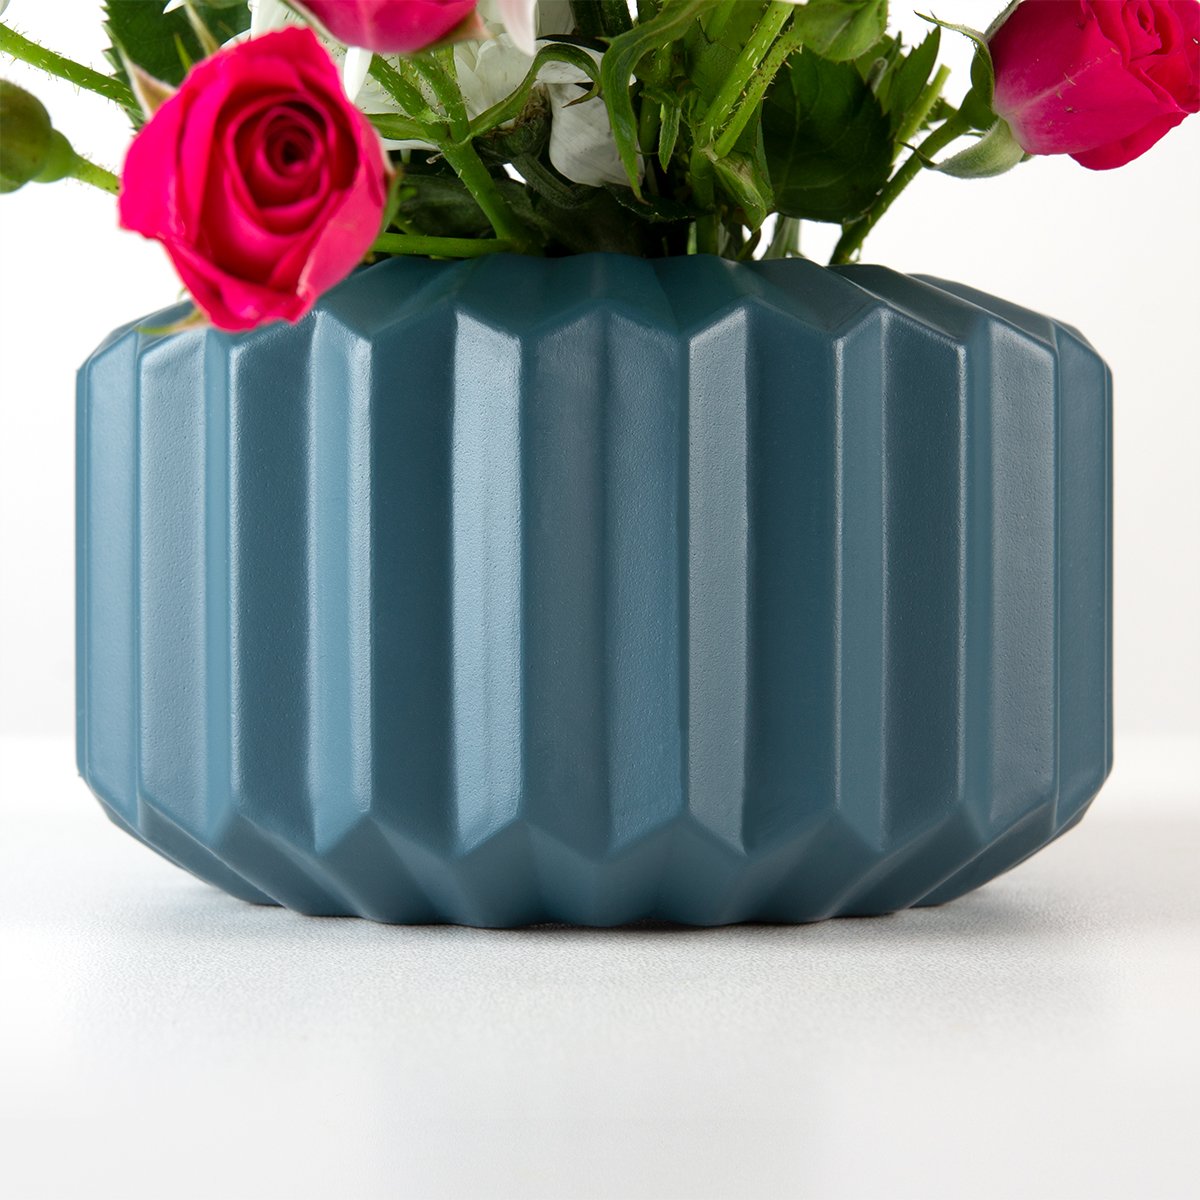 Ваза декоративная МВМ My Home, 7,5 см, синяя (DH-FLOWERS-08 DARK BLUE) - фото 6